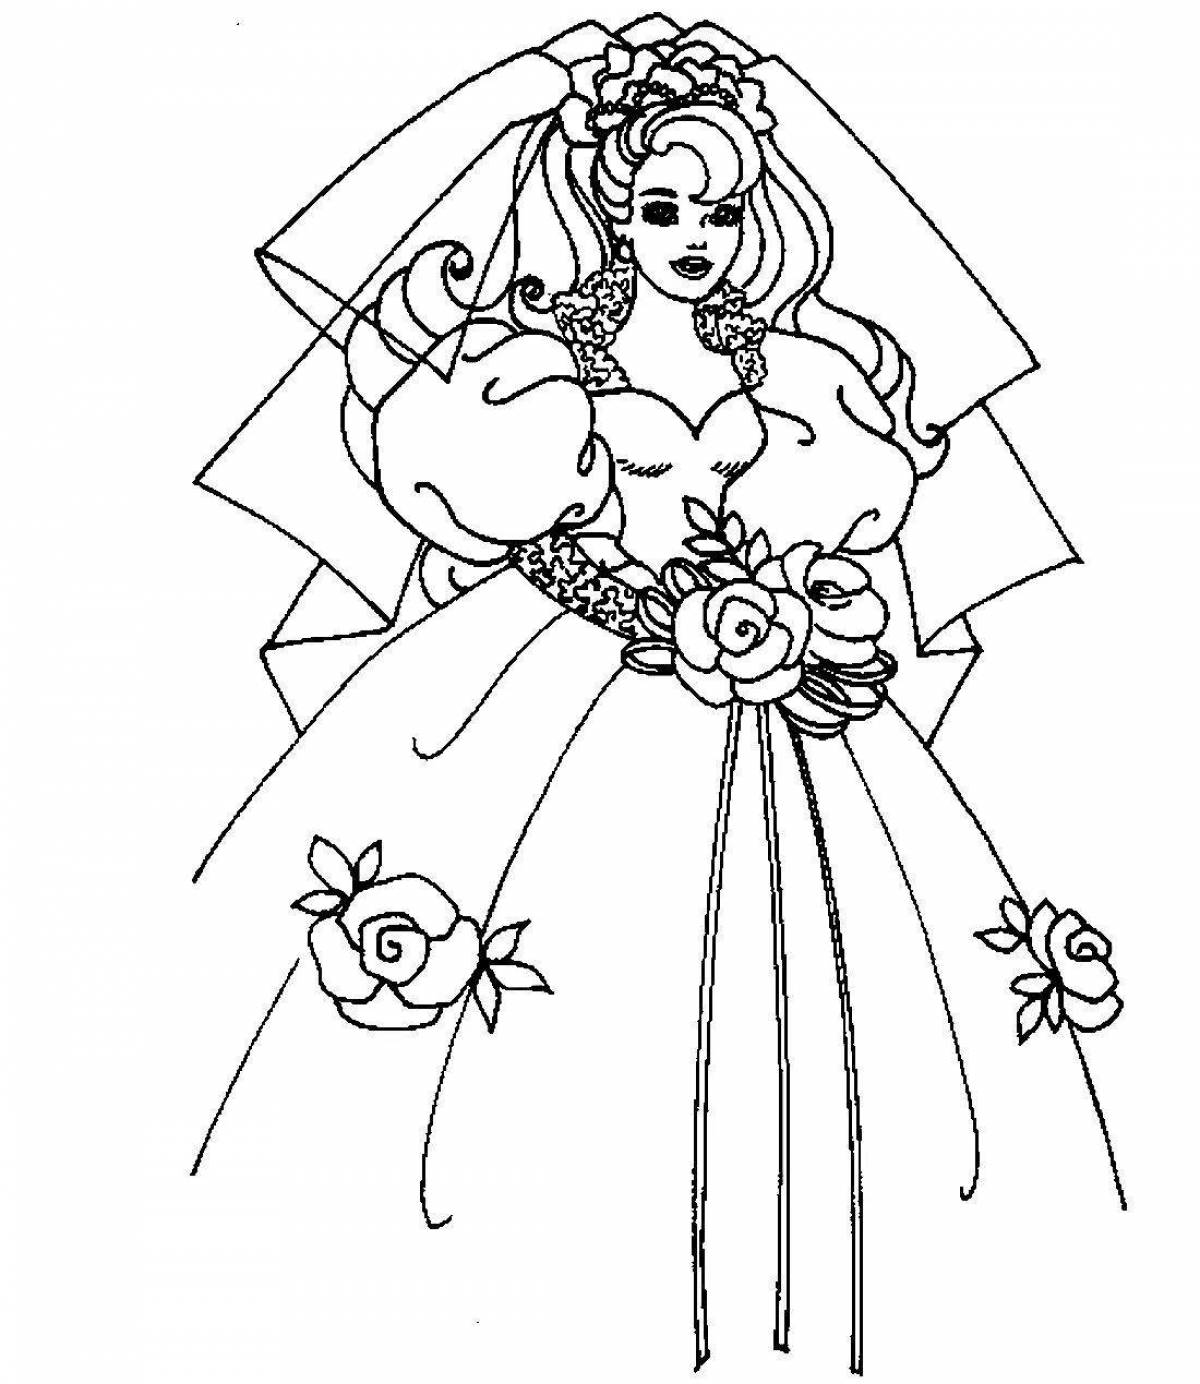 Sky bride coloring page